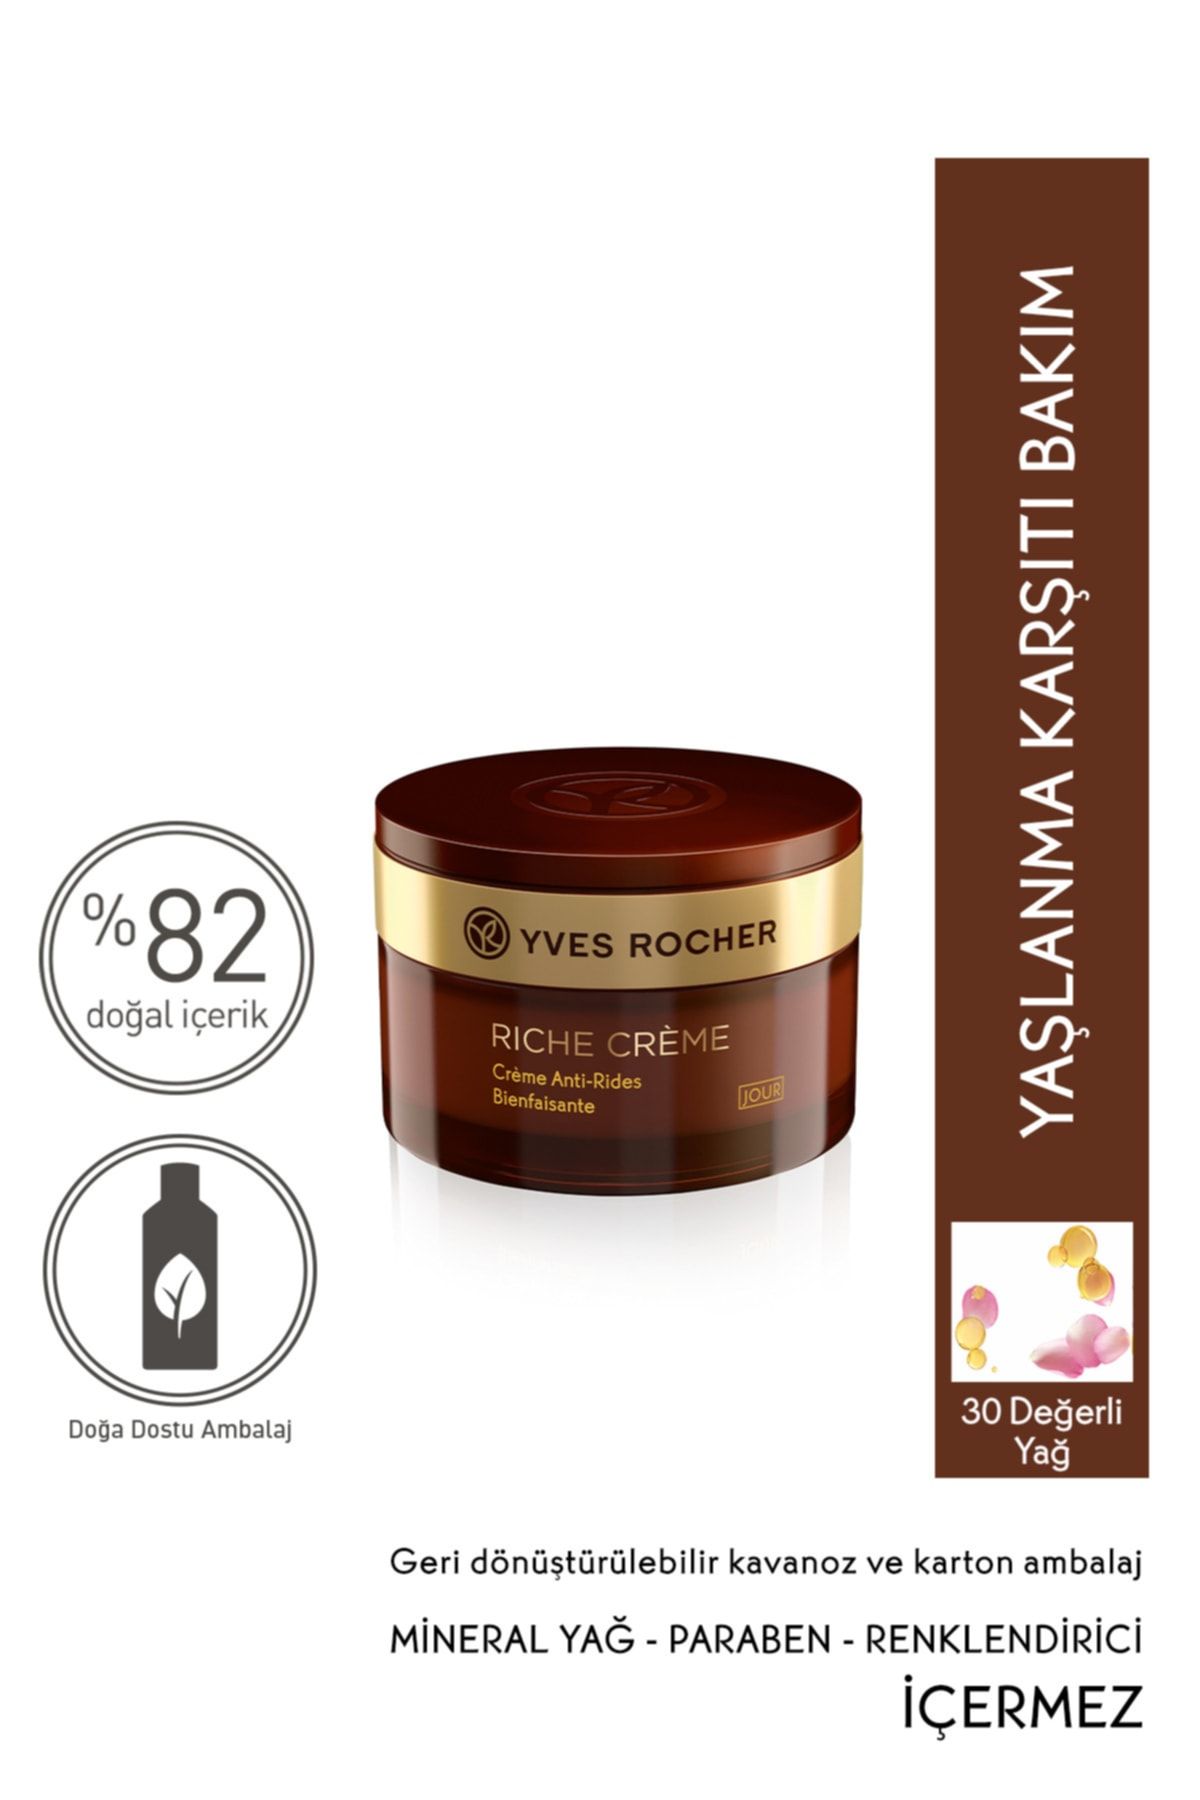 Yves Rocher Riche Creme - Besleyici Yenileyici Gündüz Kremi - 50 Ml